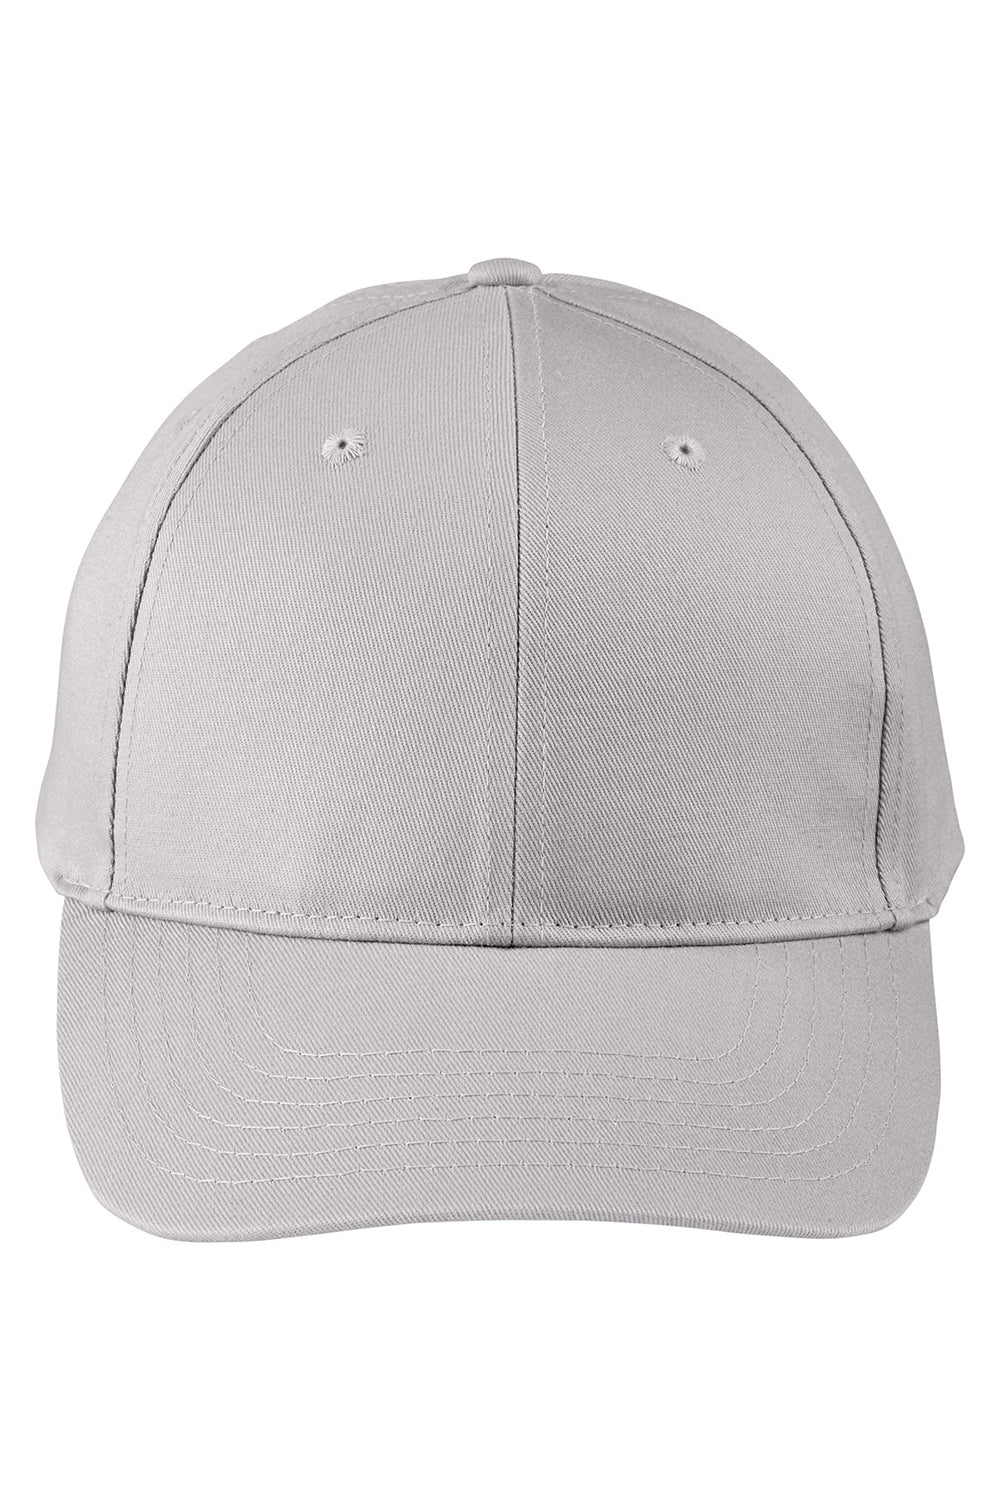 Big Accessories BX020SB Mens Twill Snapback Hat Light Grey Flat Front